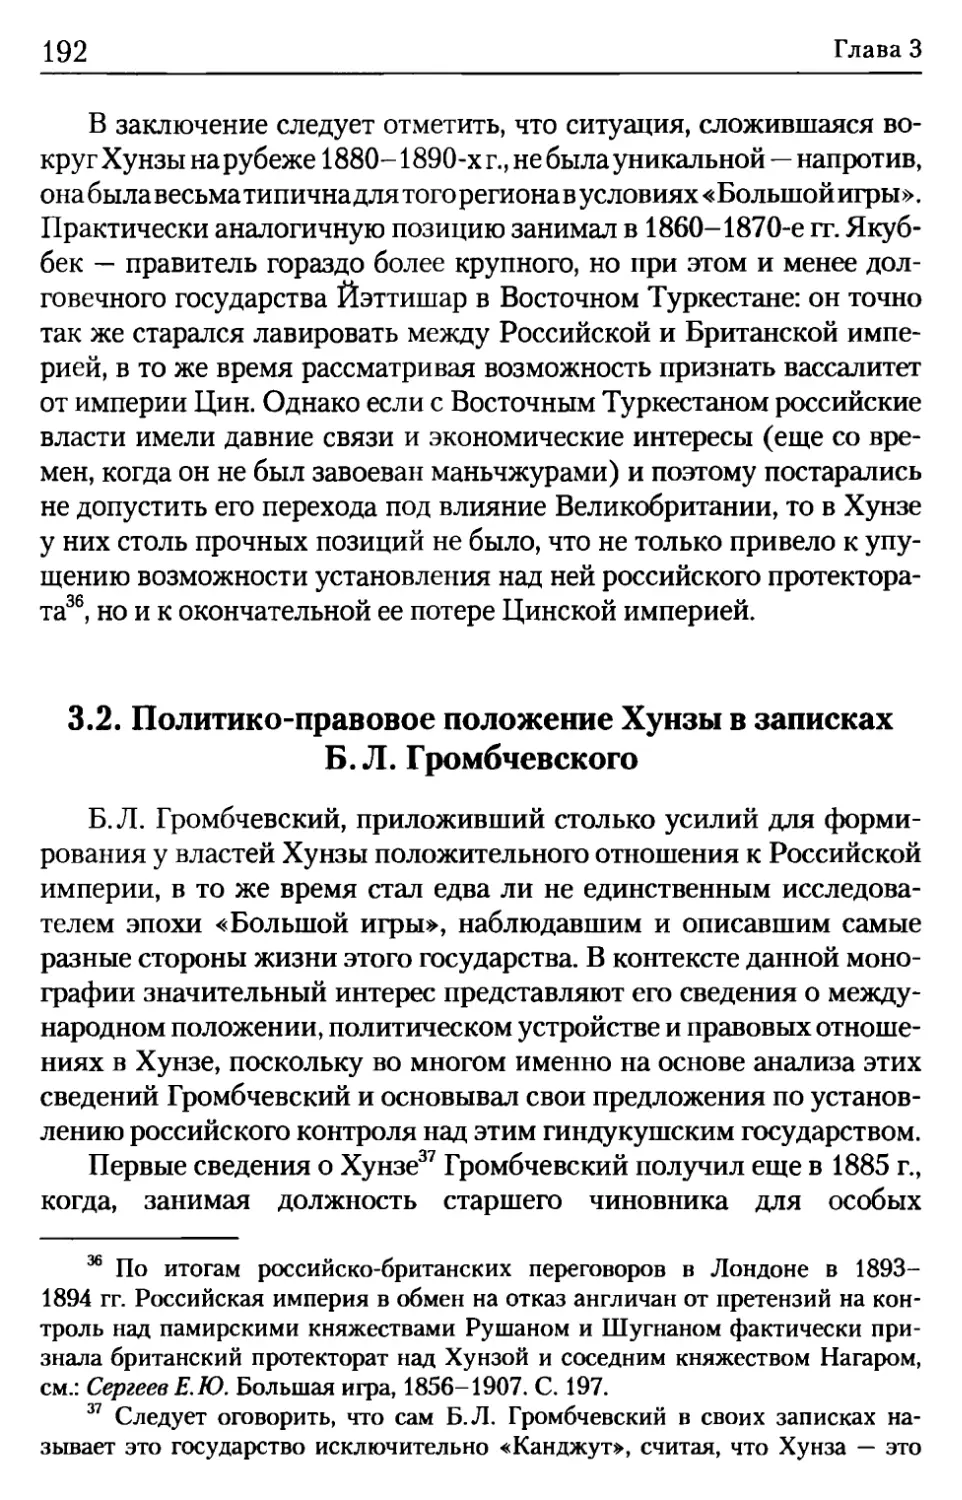 3.2. Политико-правовое положение Хунзы в записках Б.Л. Громбчевского